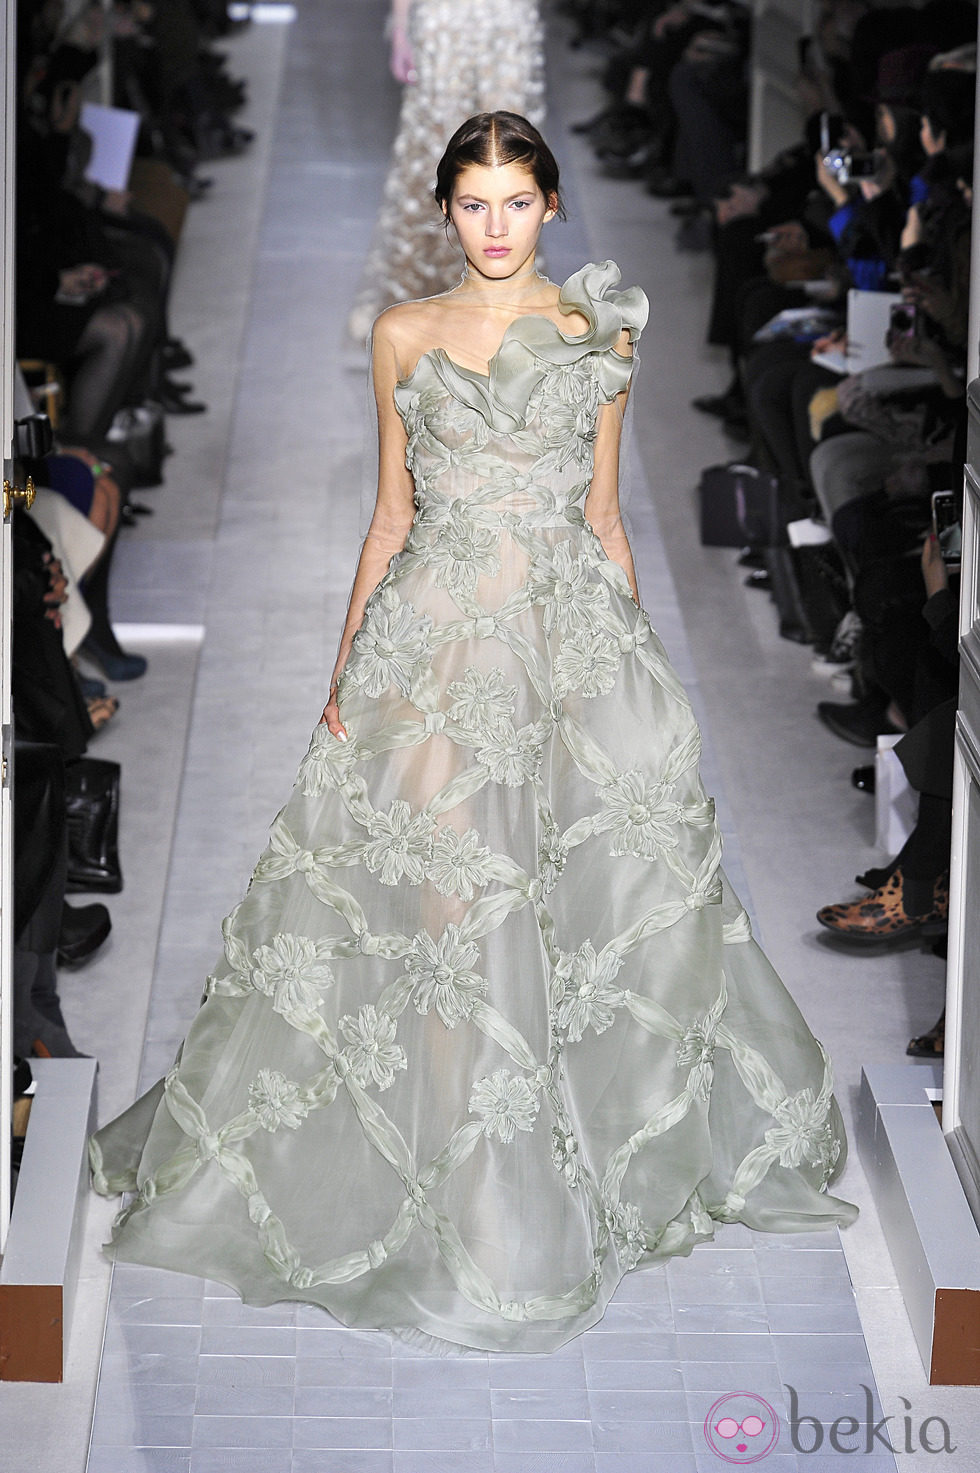 Vestido voluminoso de la colección primavera/verano 2013 de Valentino en la Semana de la Alta Costura de París